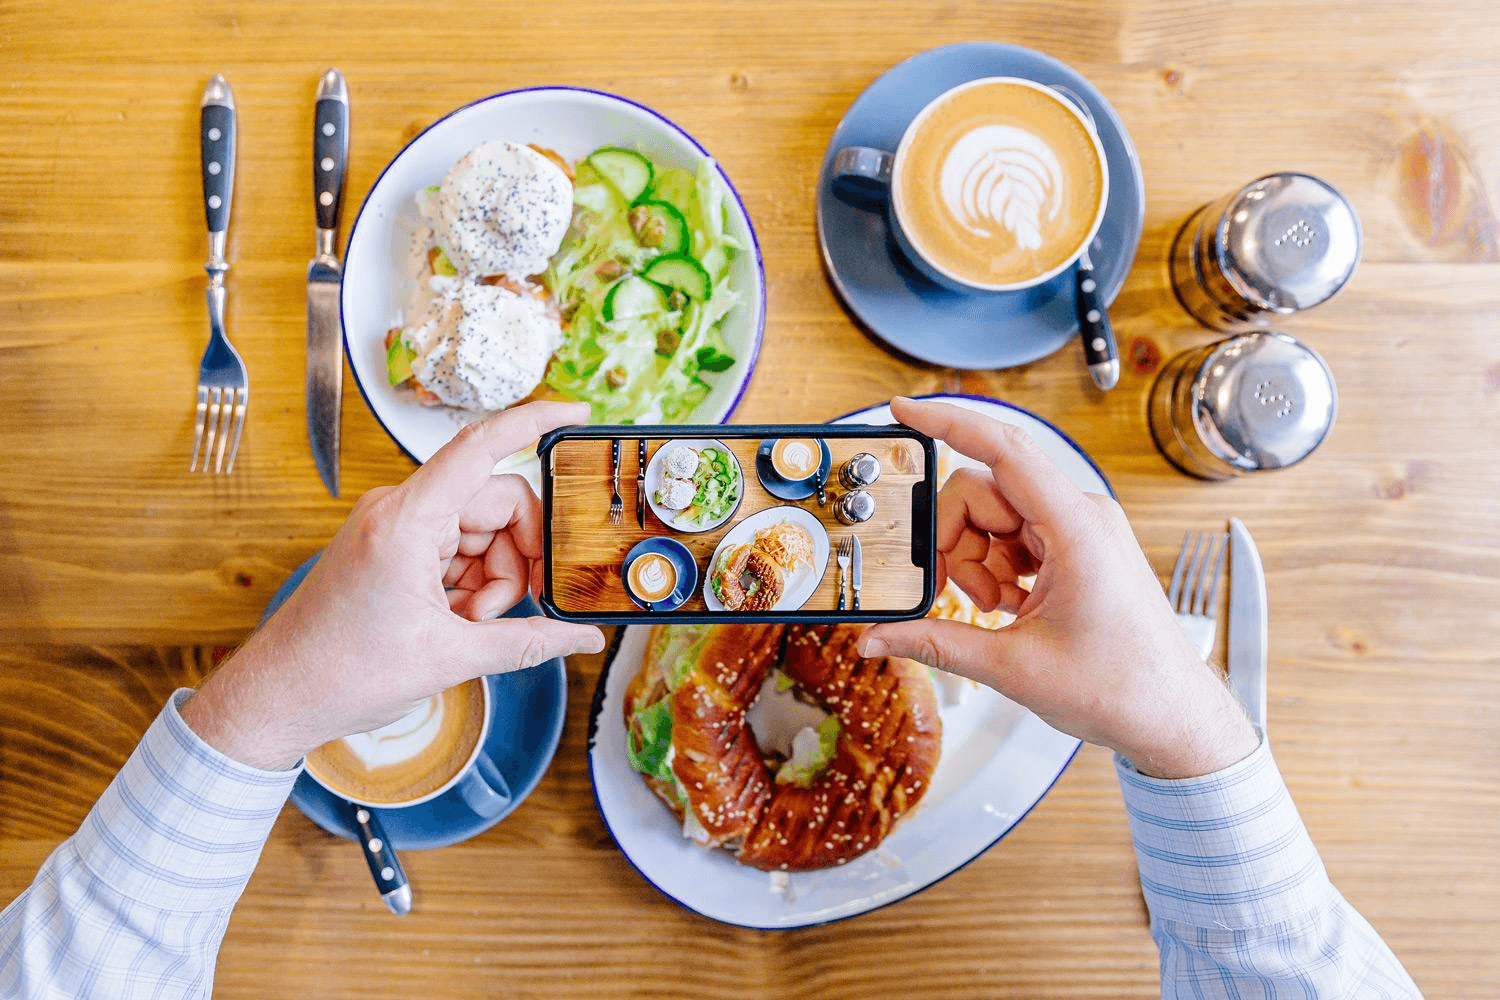 Tuyệt kỹ chụp ảnh đồ ăn đẹp bằng điện thoại, nhìn là muốn chén ngay